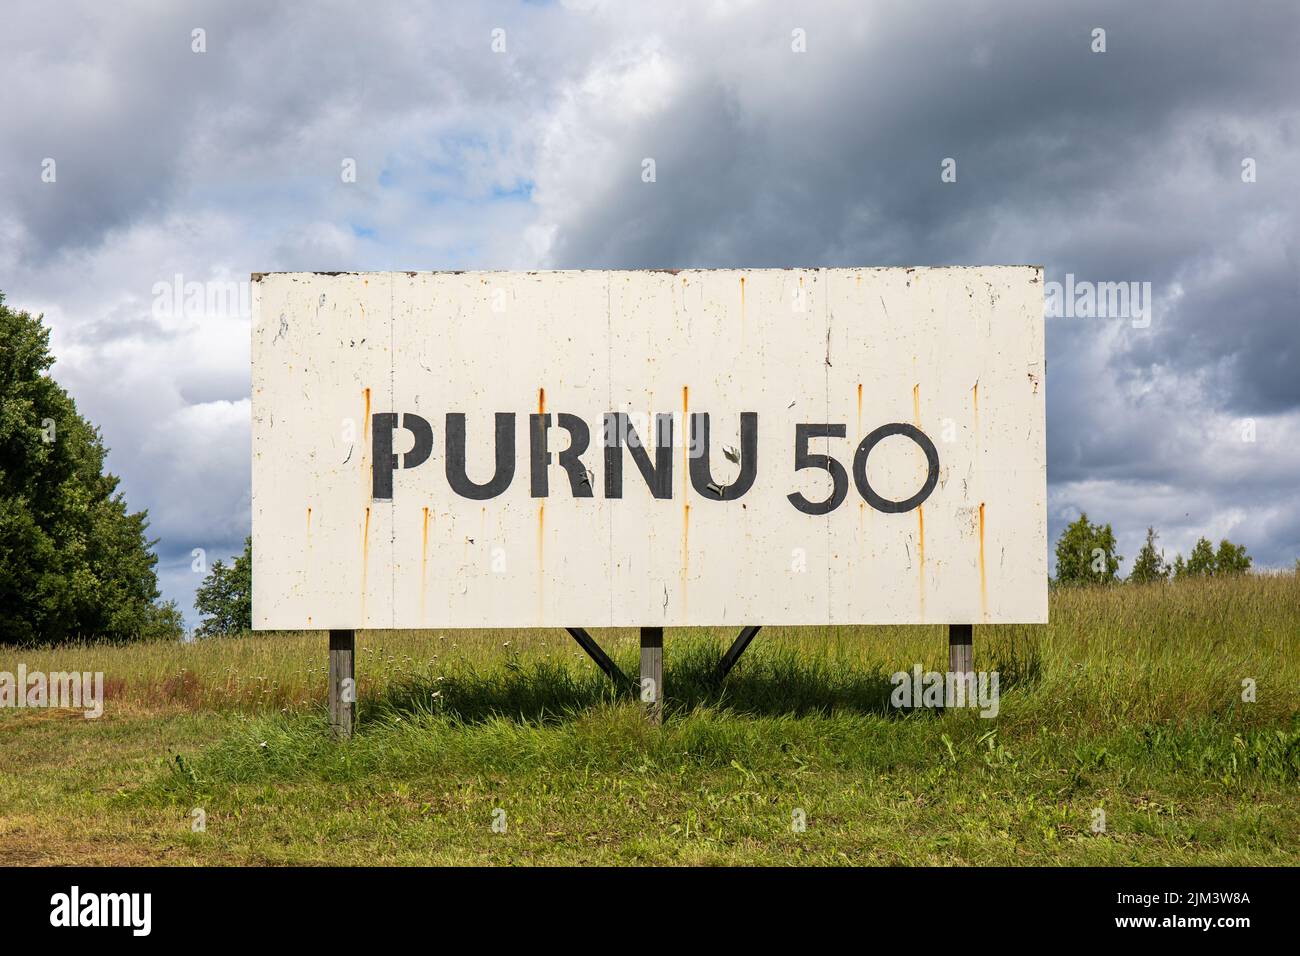 Purnu 50. Valla en Taidekeskus Purnu o Centro de Arte Purnu en Orivesi, Finlandia. Foto de stock